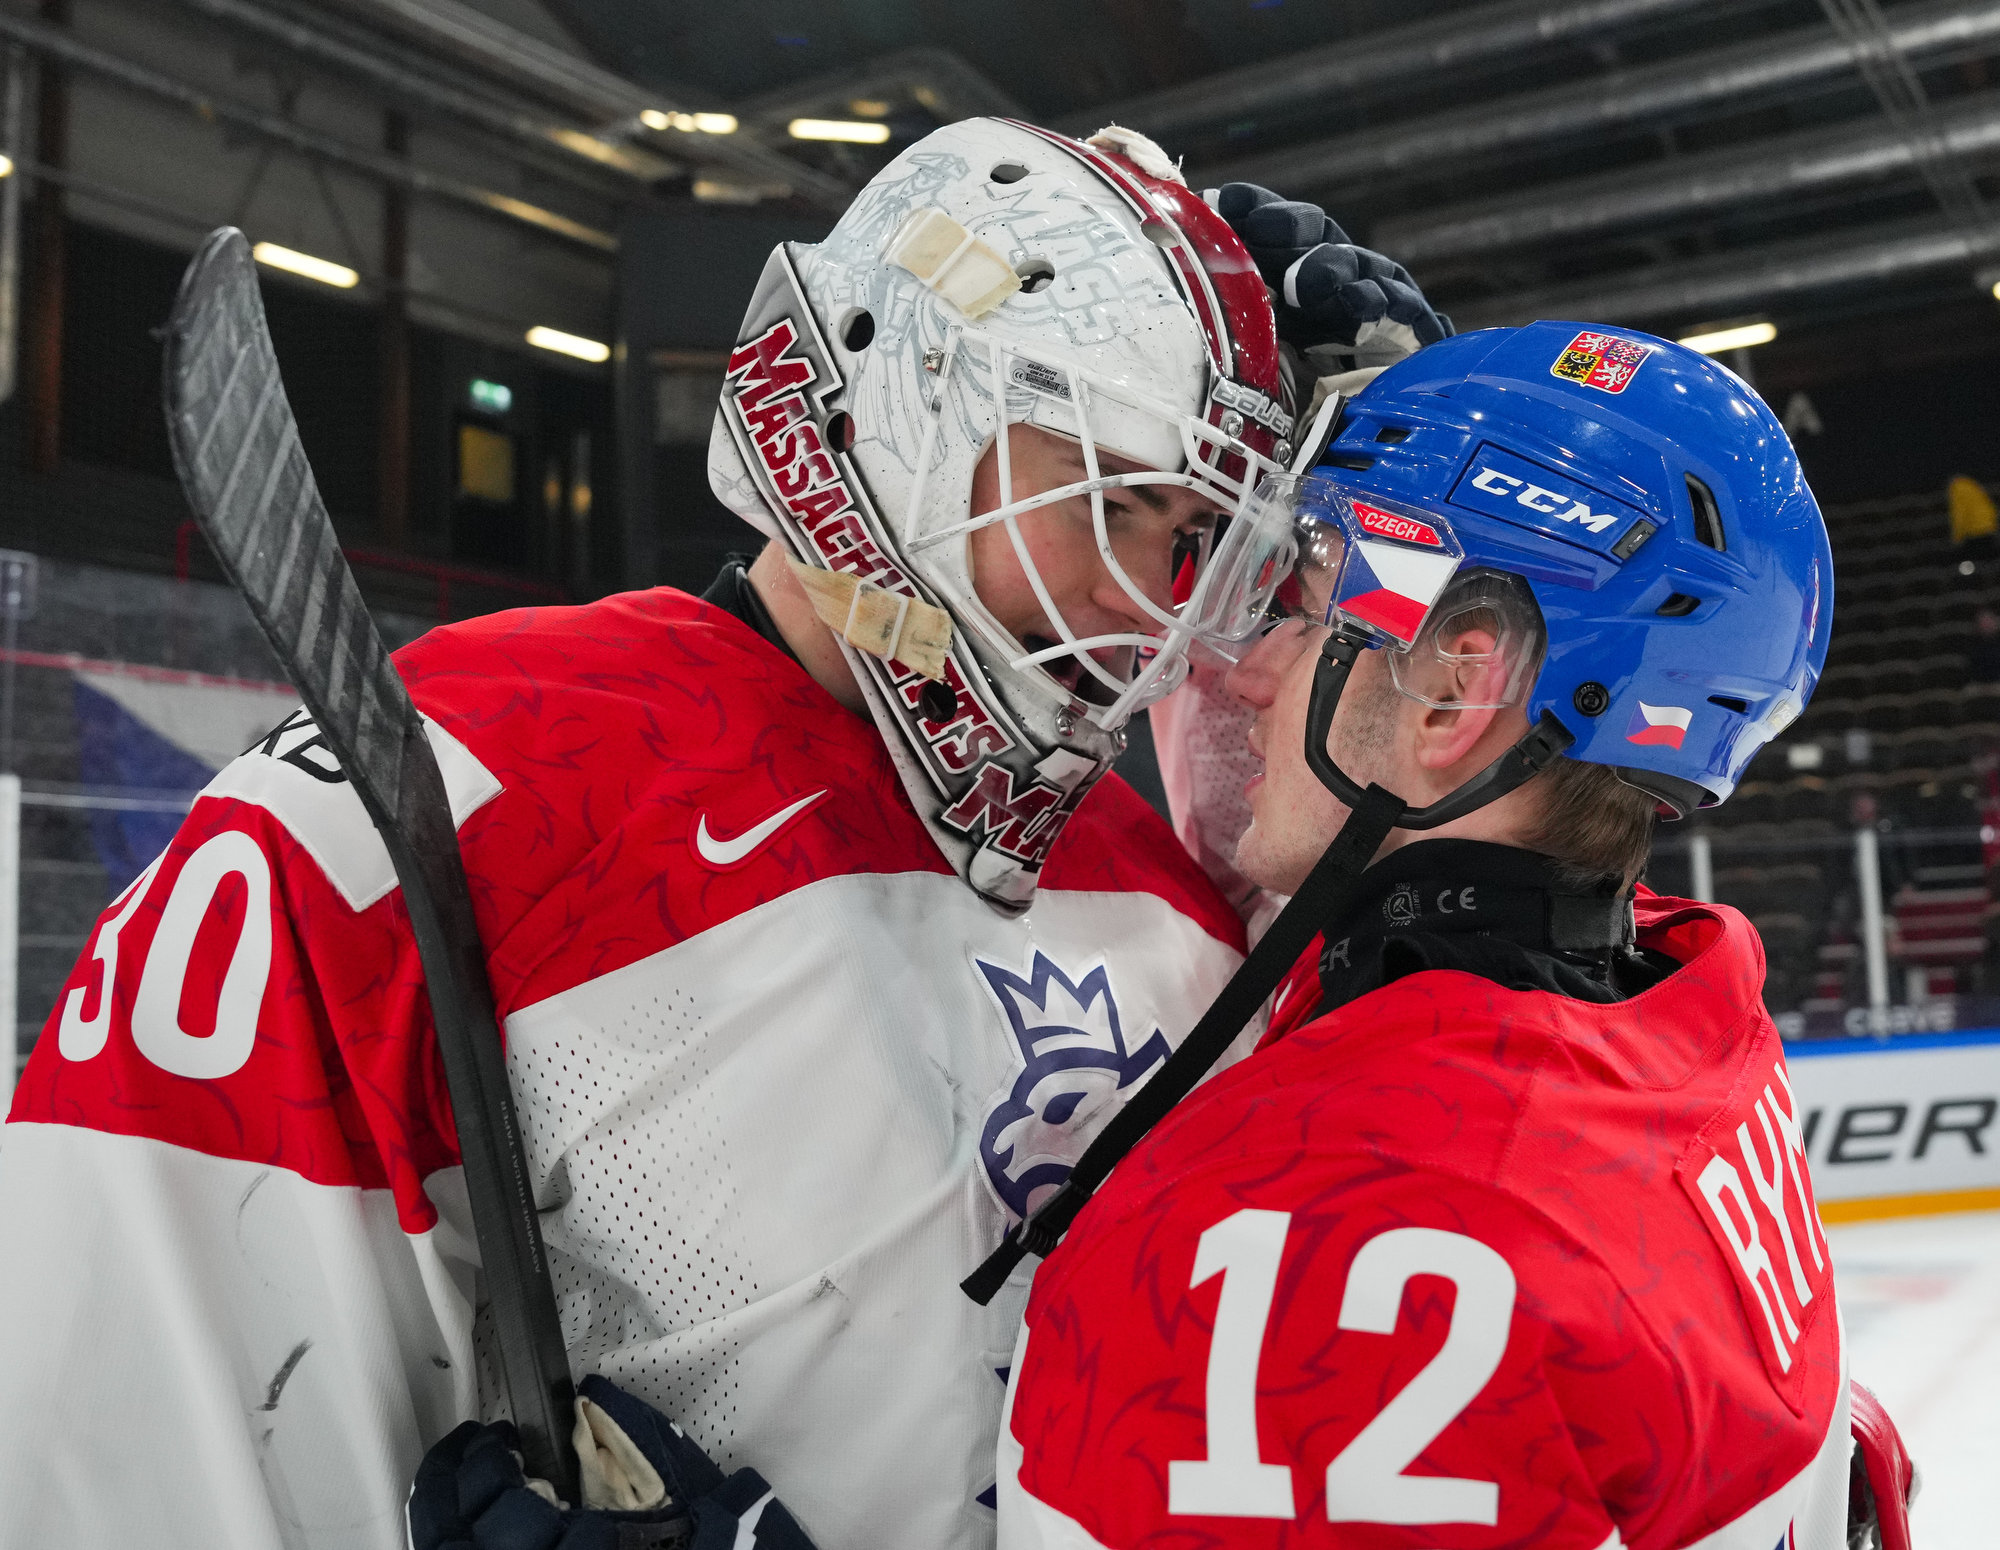 IIHF Gallery Norway vs Czechia 2024 IIHF World Junior Championship